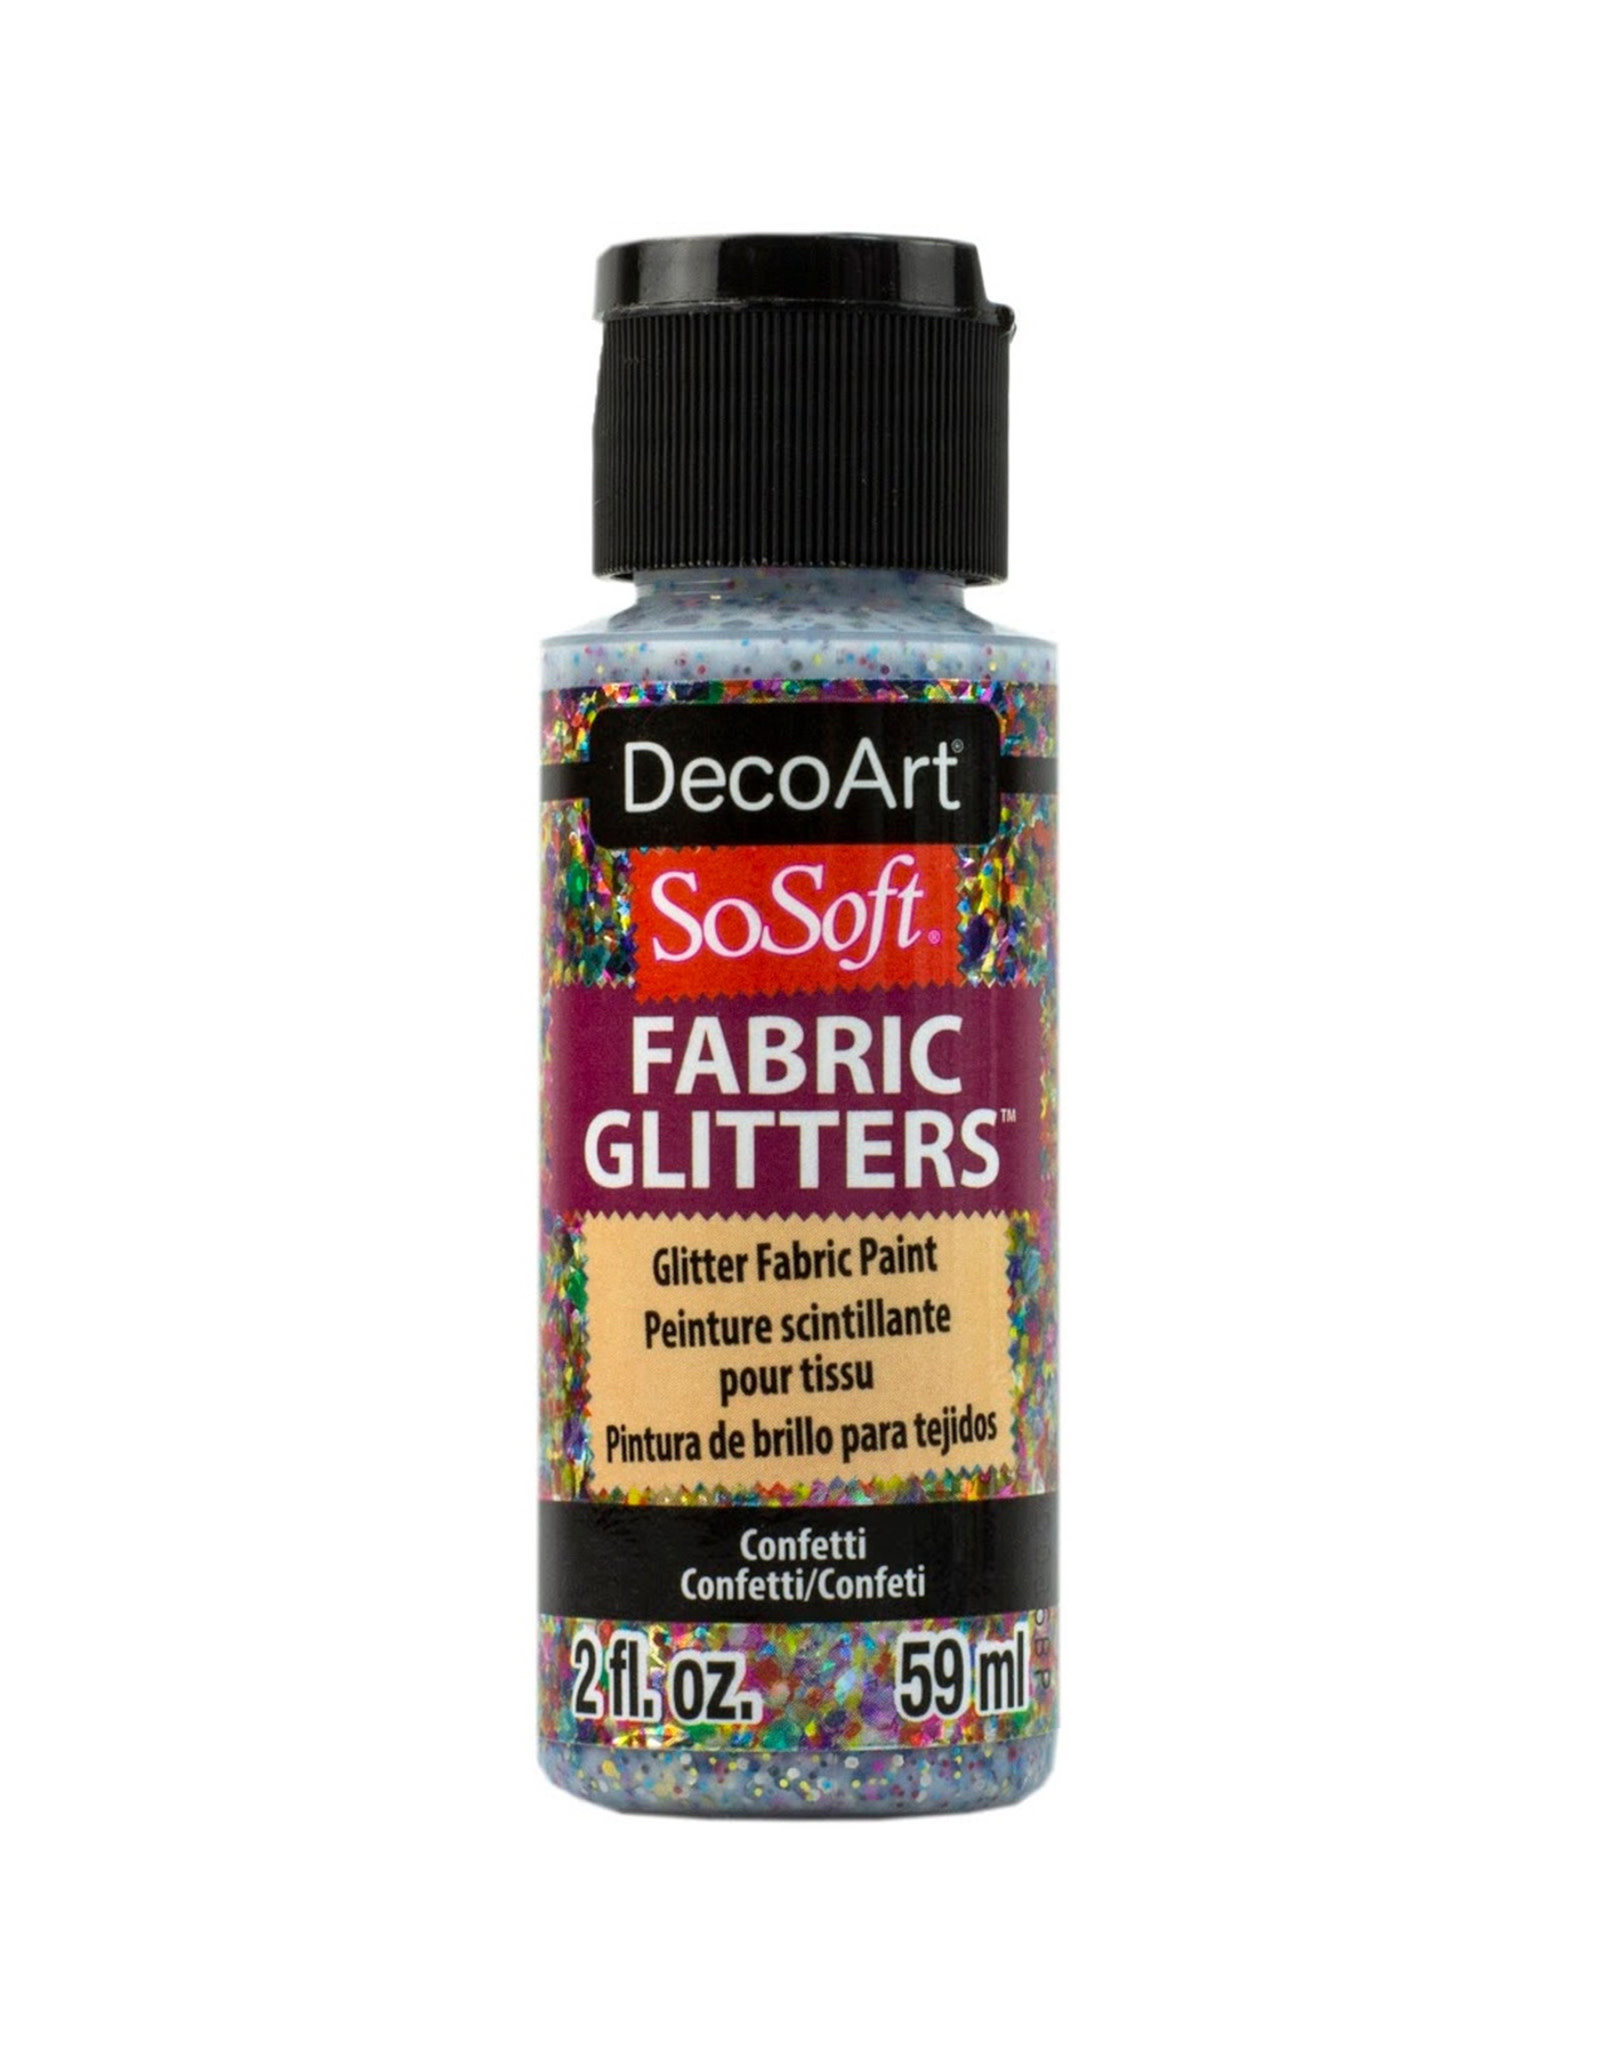 DecoArt DecoArt SoSoft Fabric Glitters, Confetti 2oz